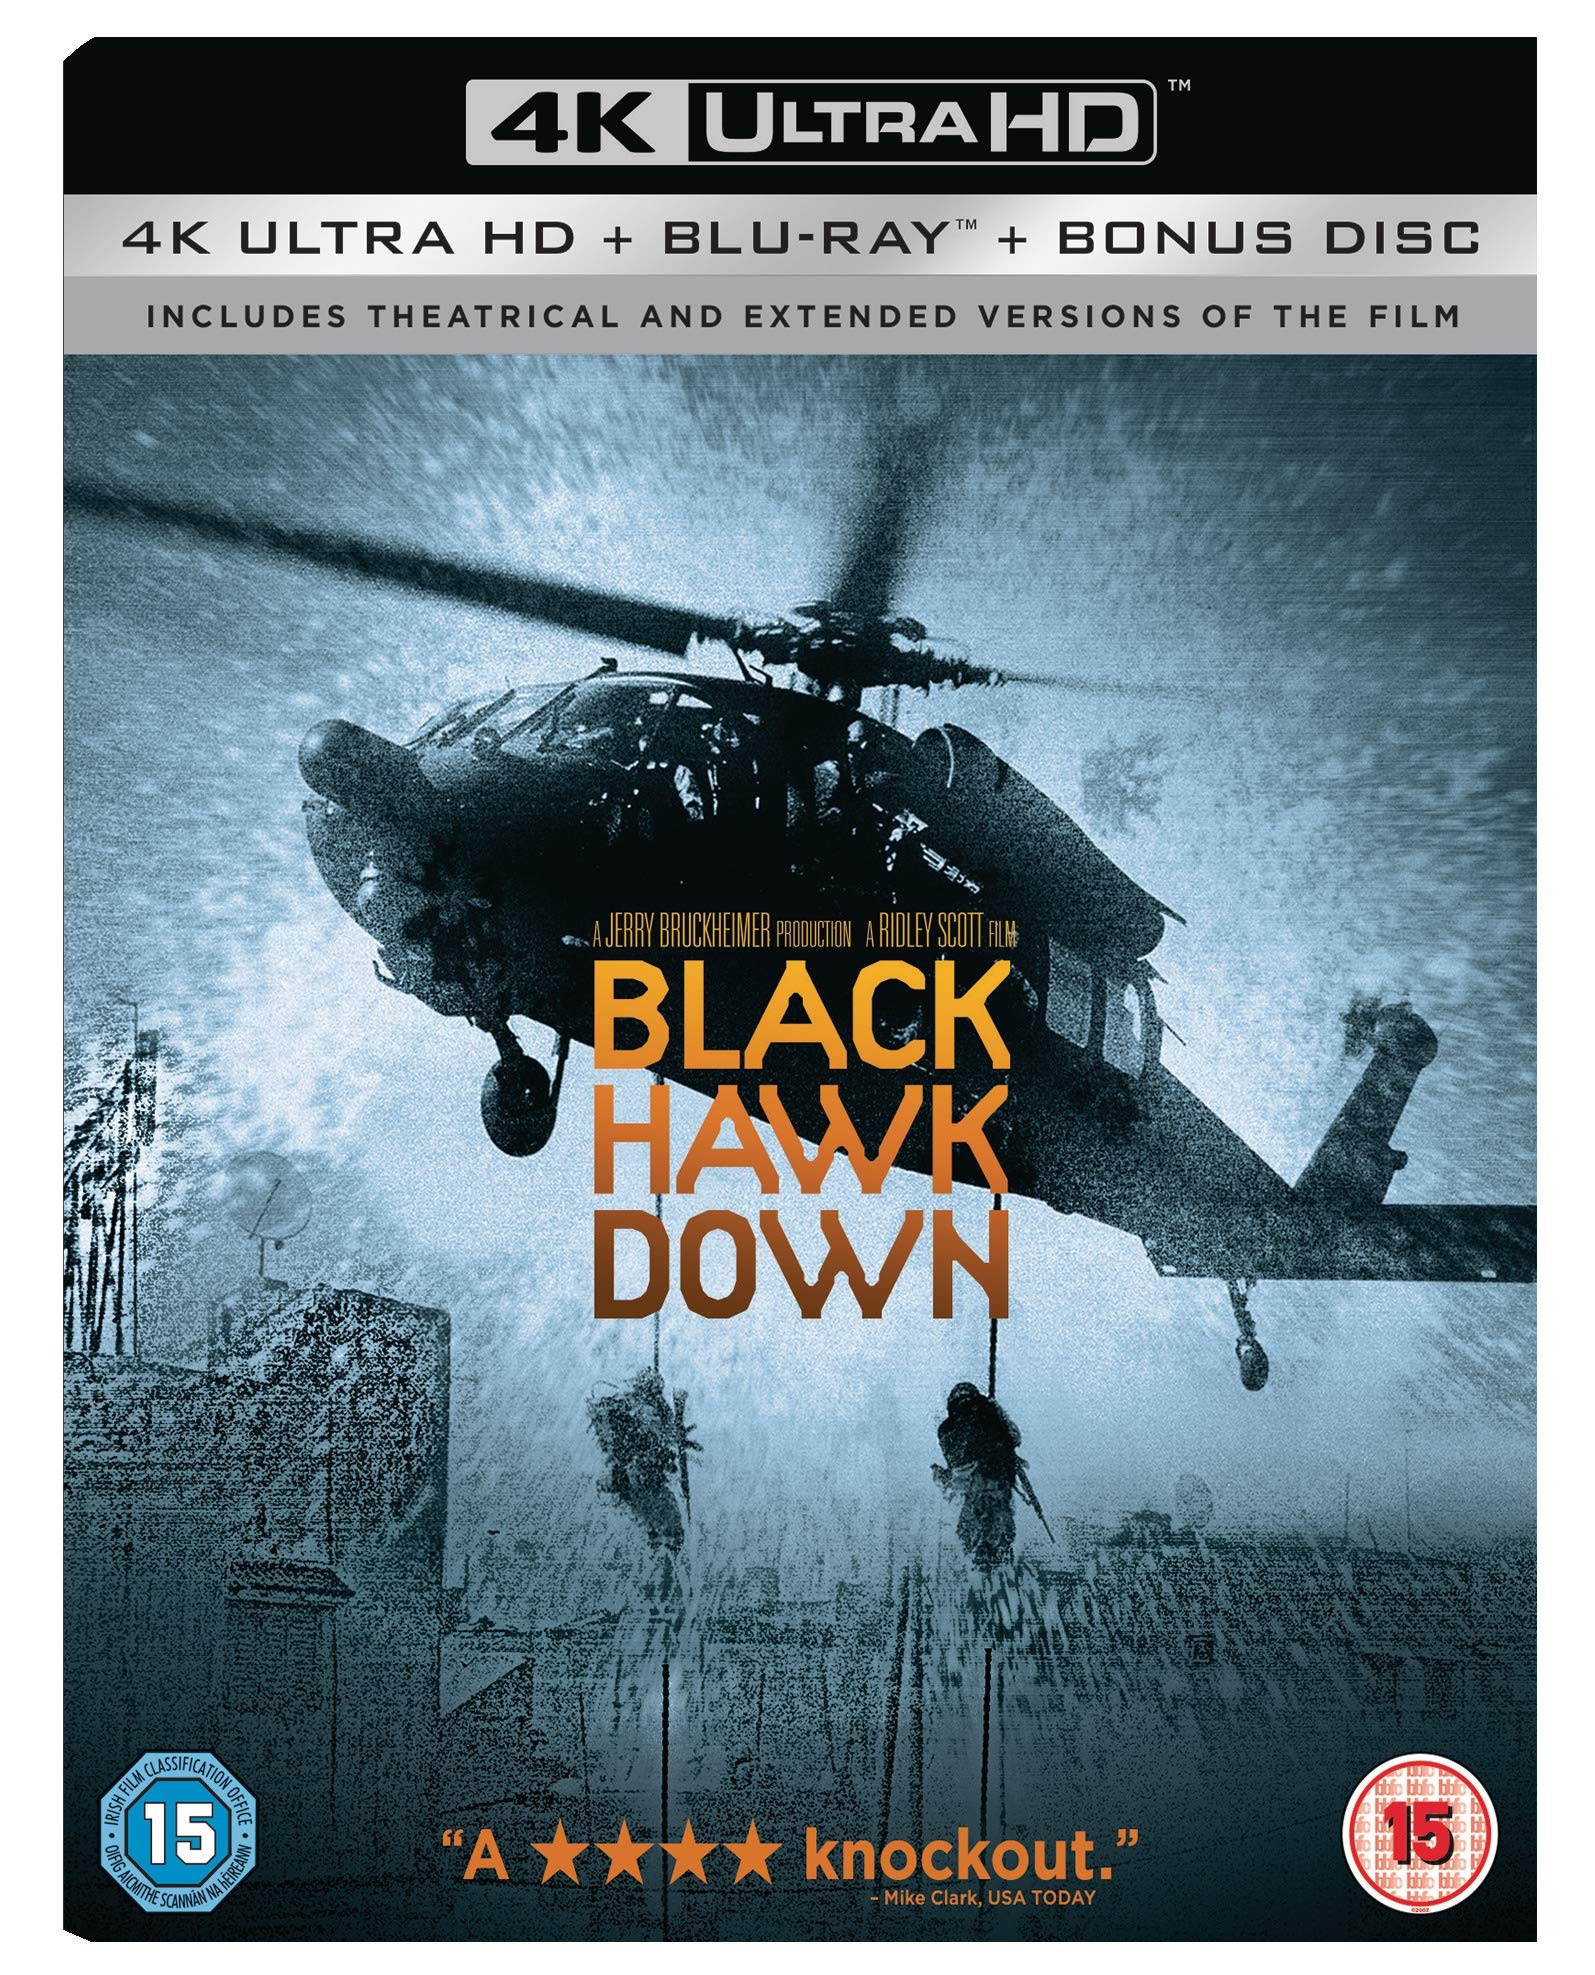 Black Hawk down [4K Ultra-HD + Blu-Ray] [UK Import]